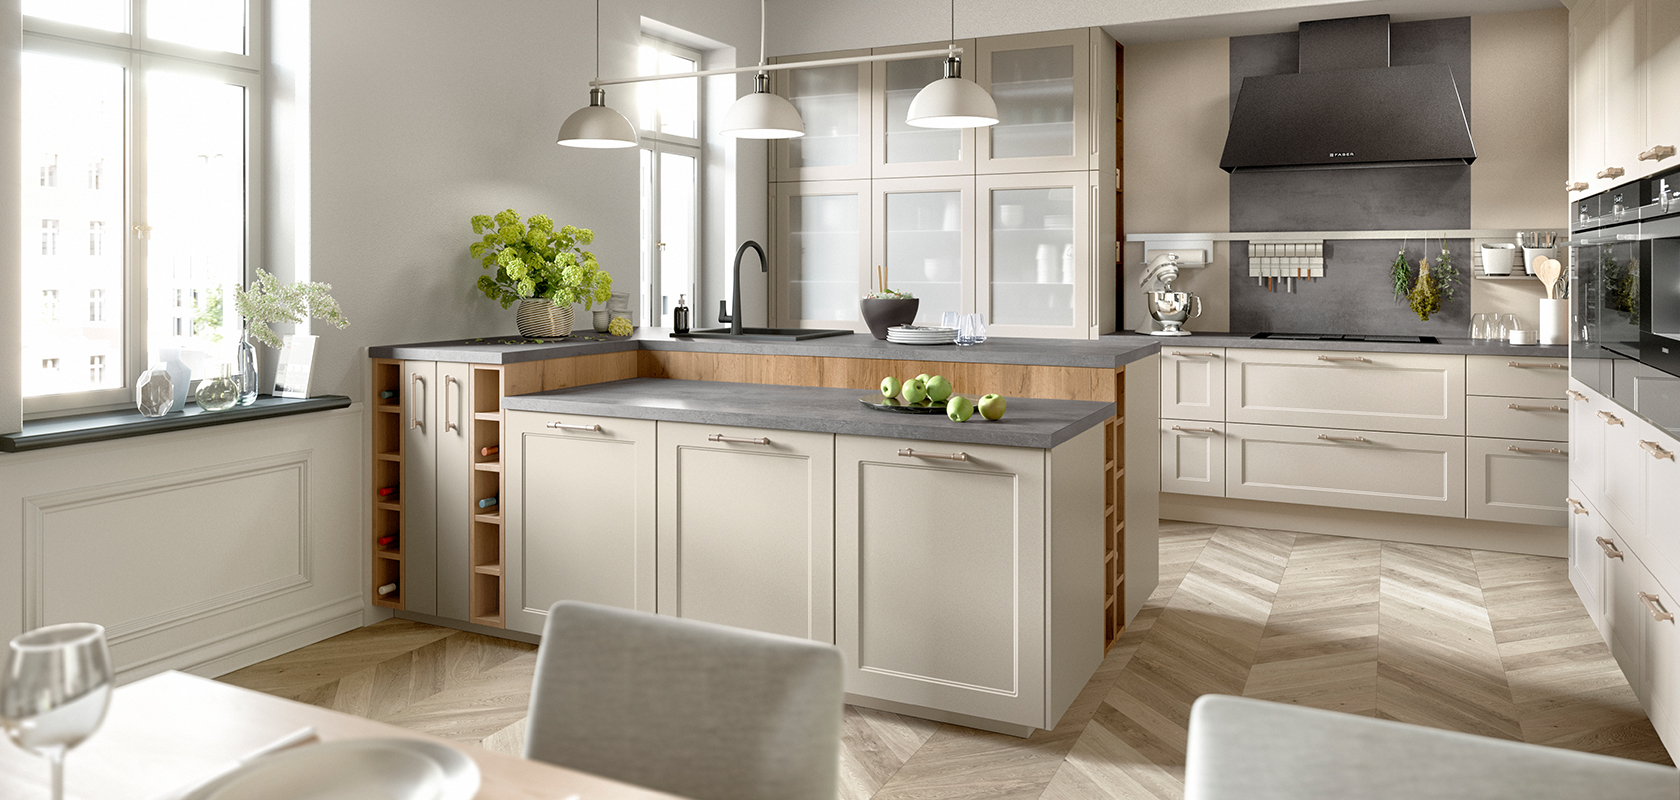 Elegante interno di cucina con luce naturale, caratterizzato da un pavimento in legno, armadi beige, elettrodomestici moderni e un'atmosfera accogliente e invitante.